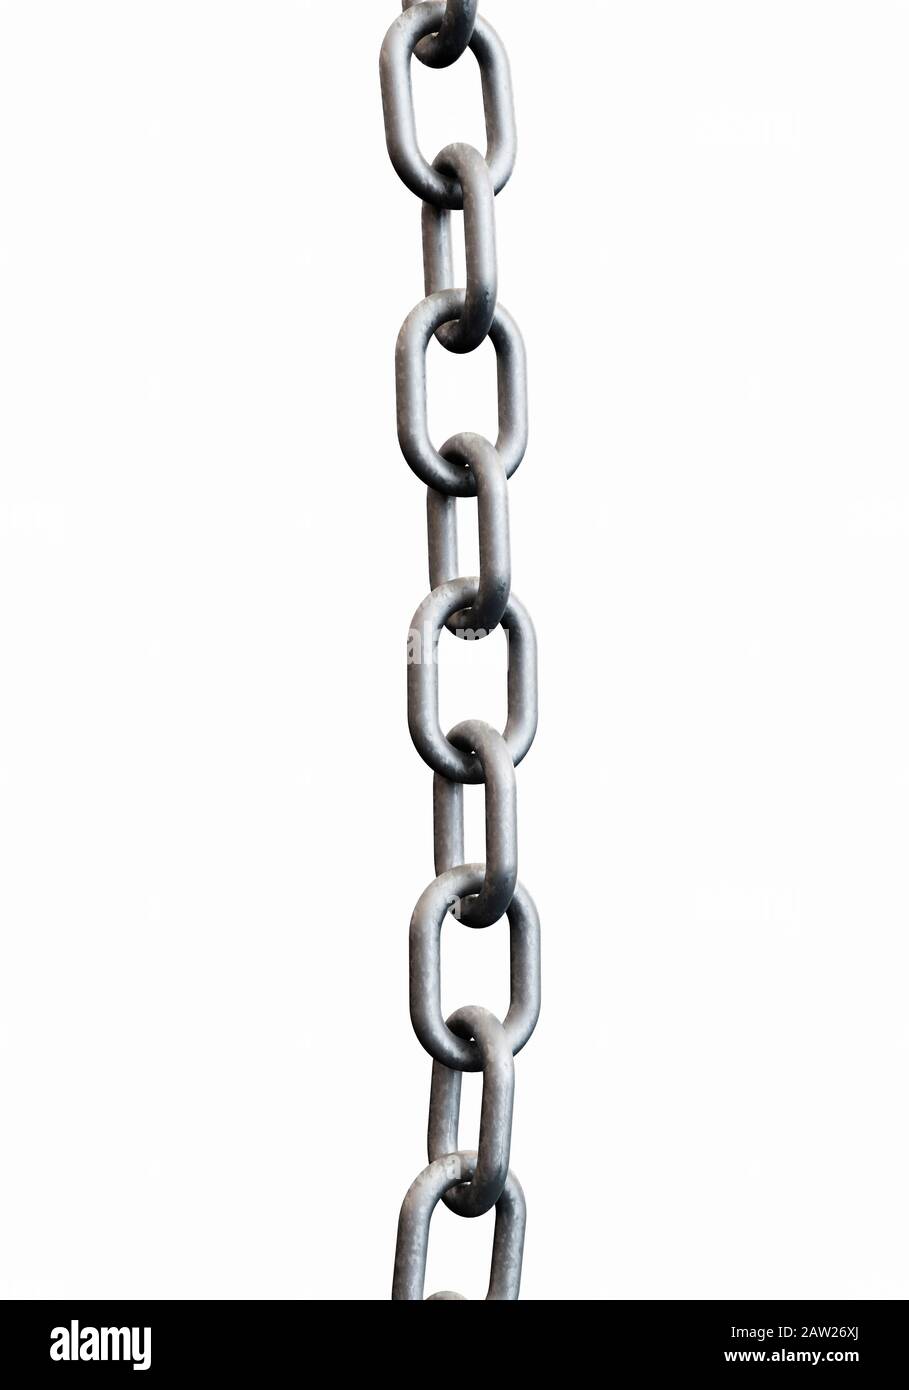 Longueur droite de la chaîne en métal galvanisé Banque D'Images